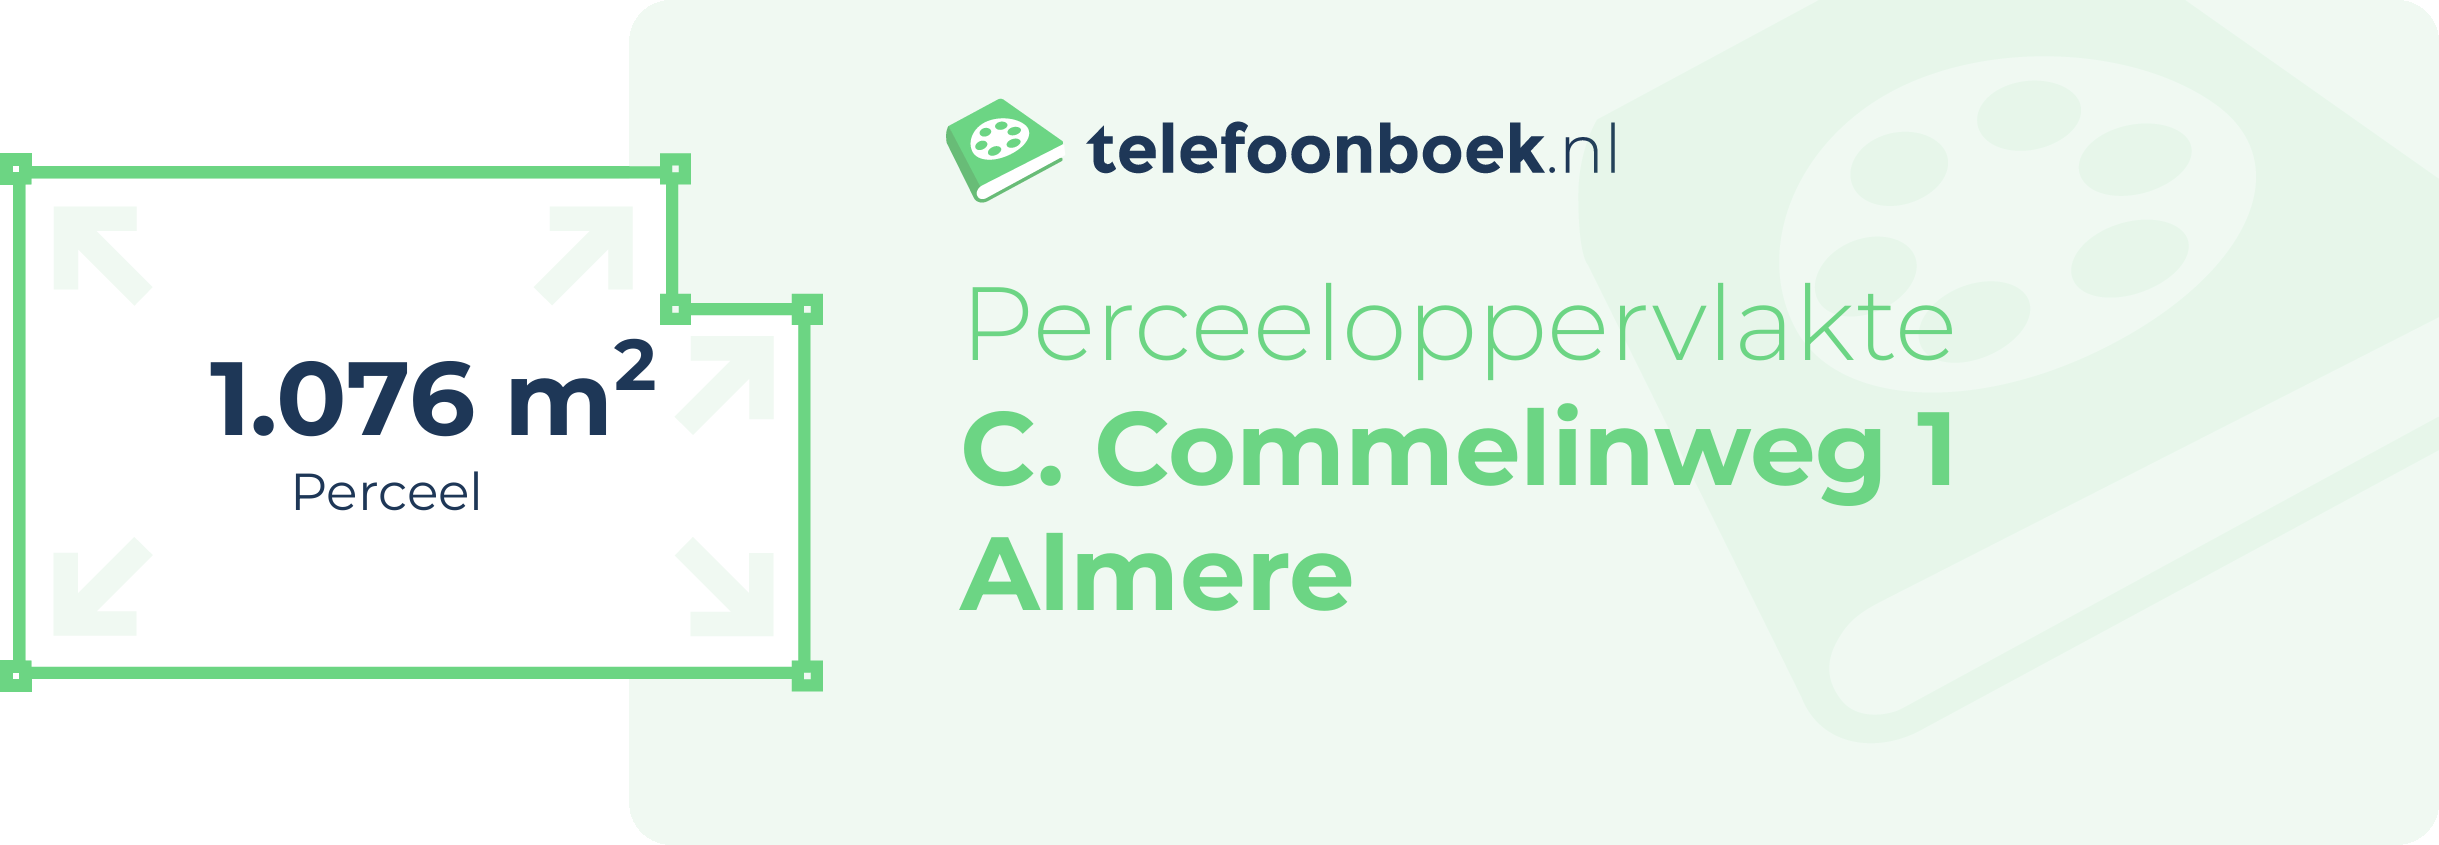 Perceeloppervlakte C. Commelinweg 1 Almere